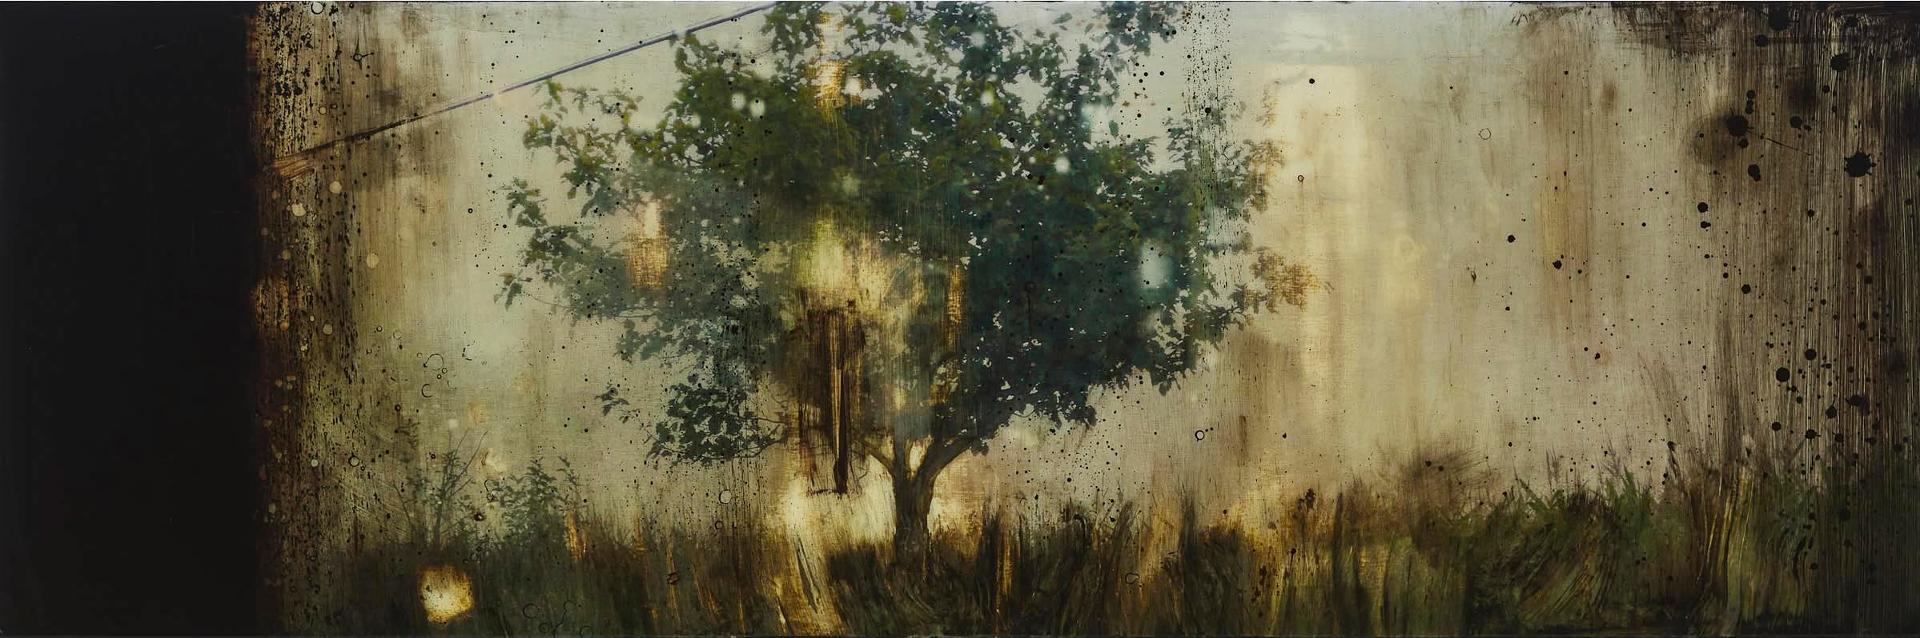 Steven Nederveen (1971) - Field Of Lights, 2007